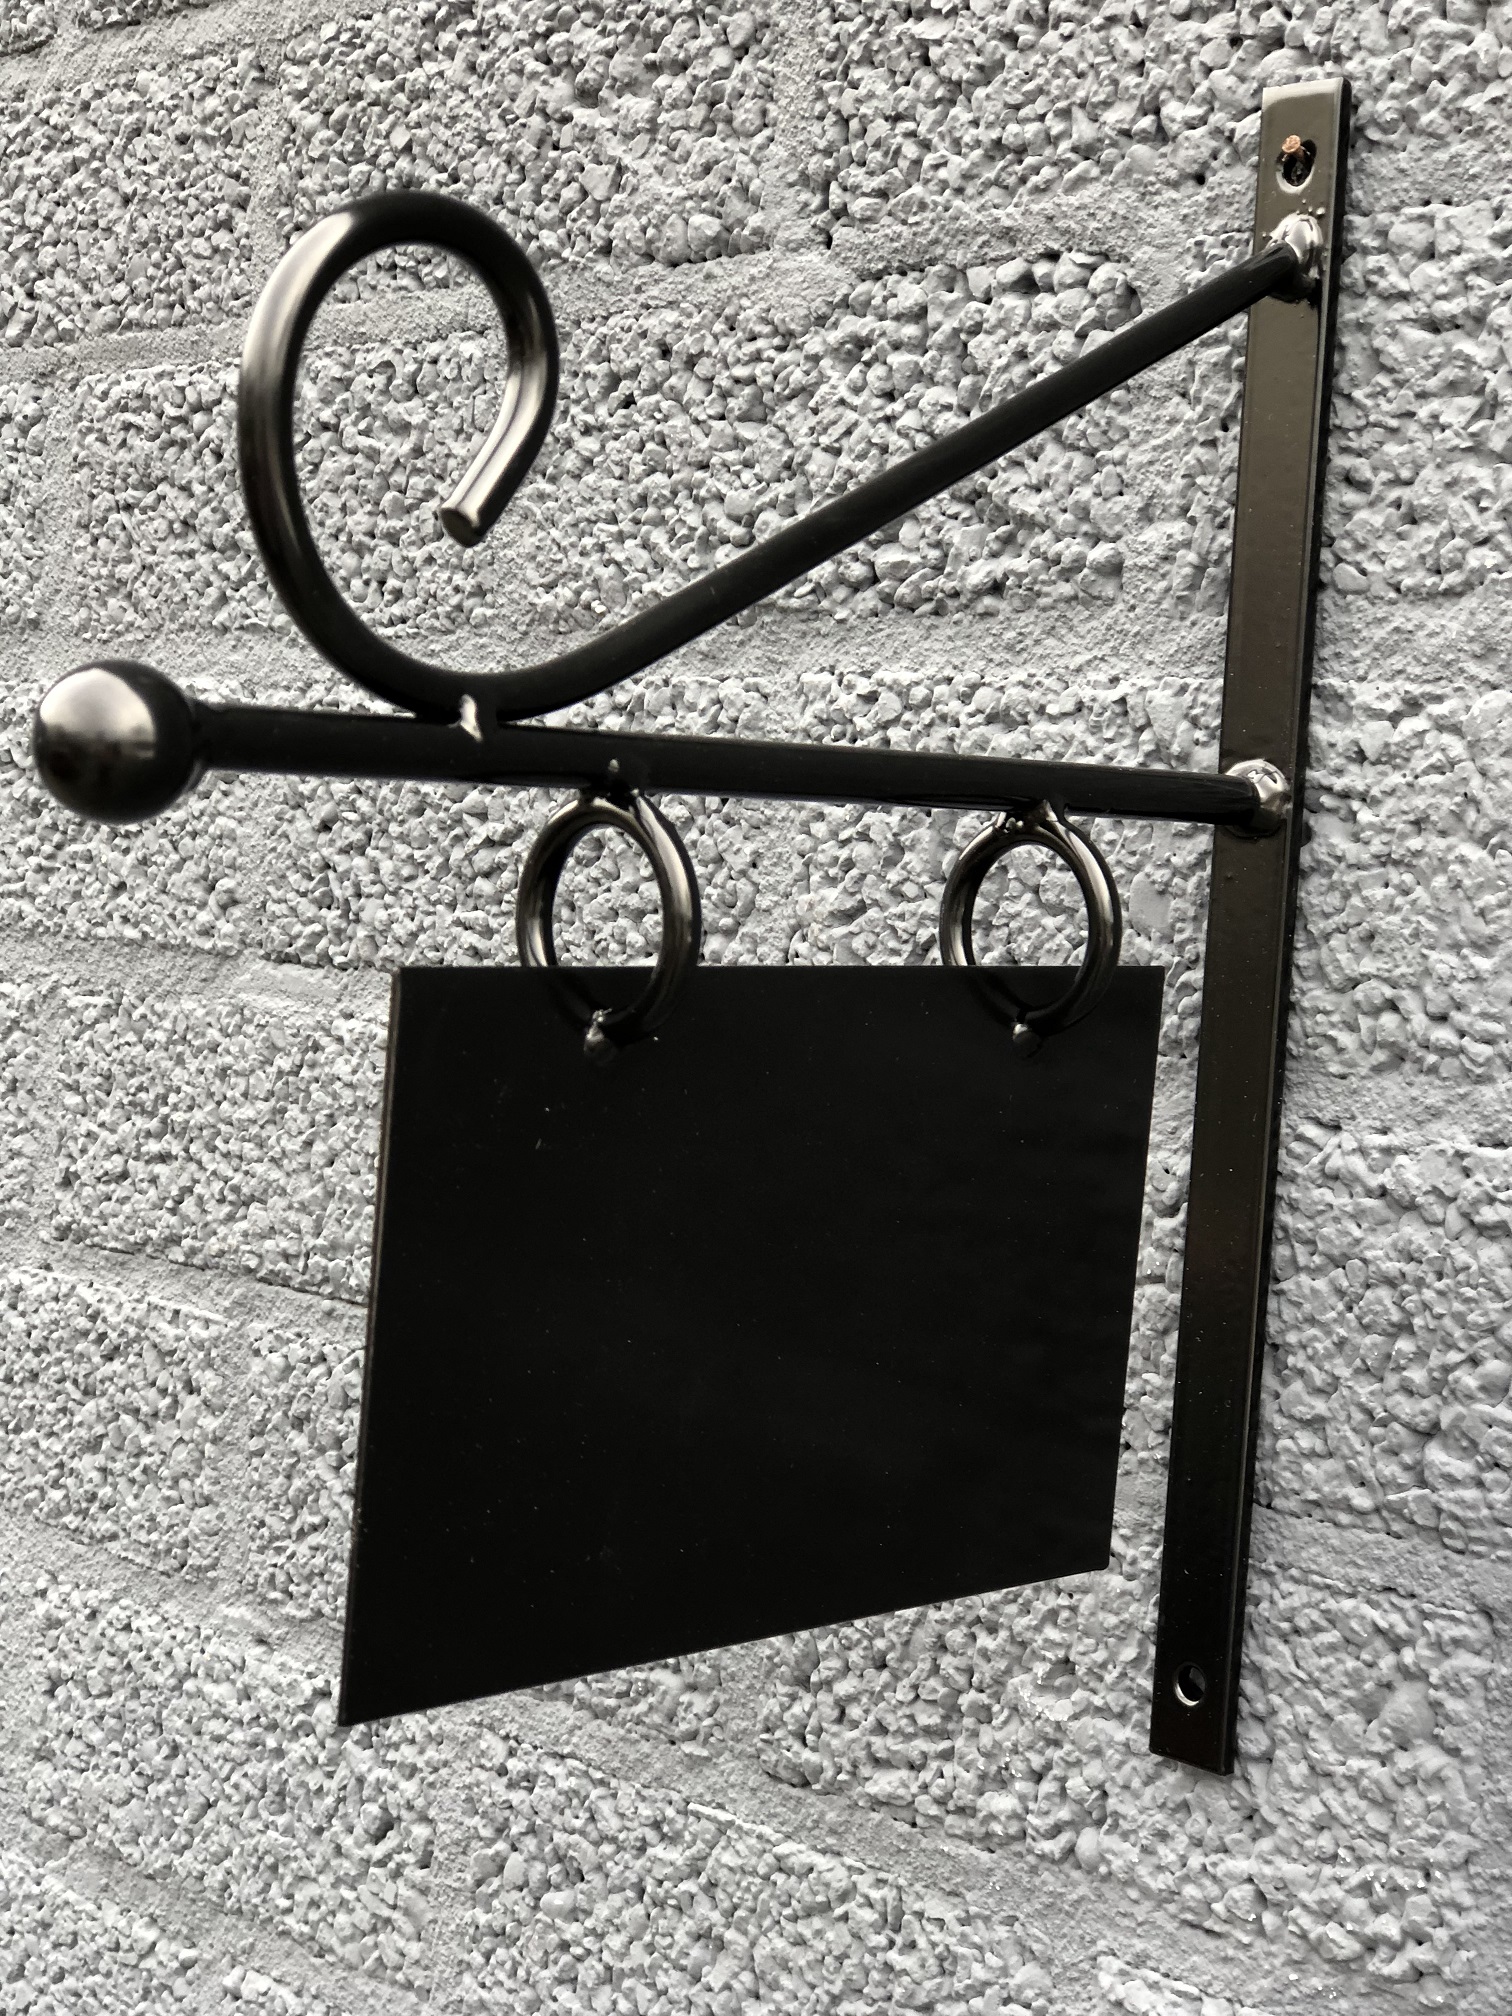 Winkel naamschild small voor in de oude binnenstad, reclame teken gemaakt van metaal, zwart geschilderd.